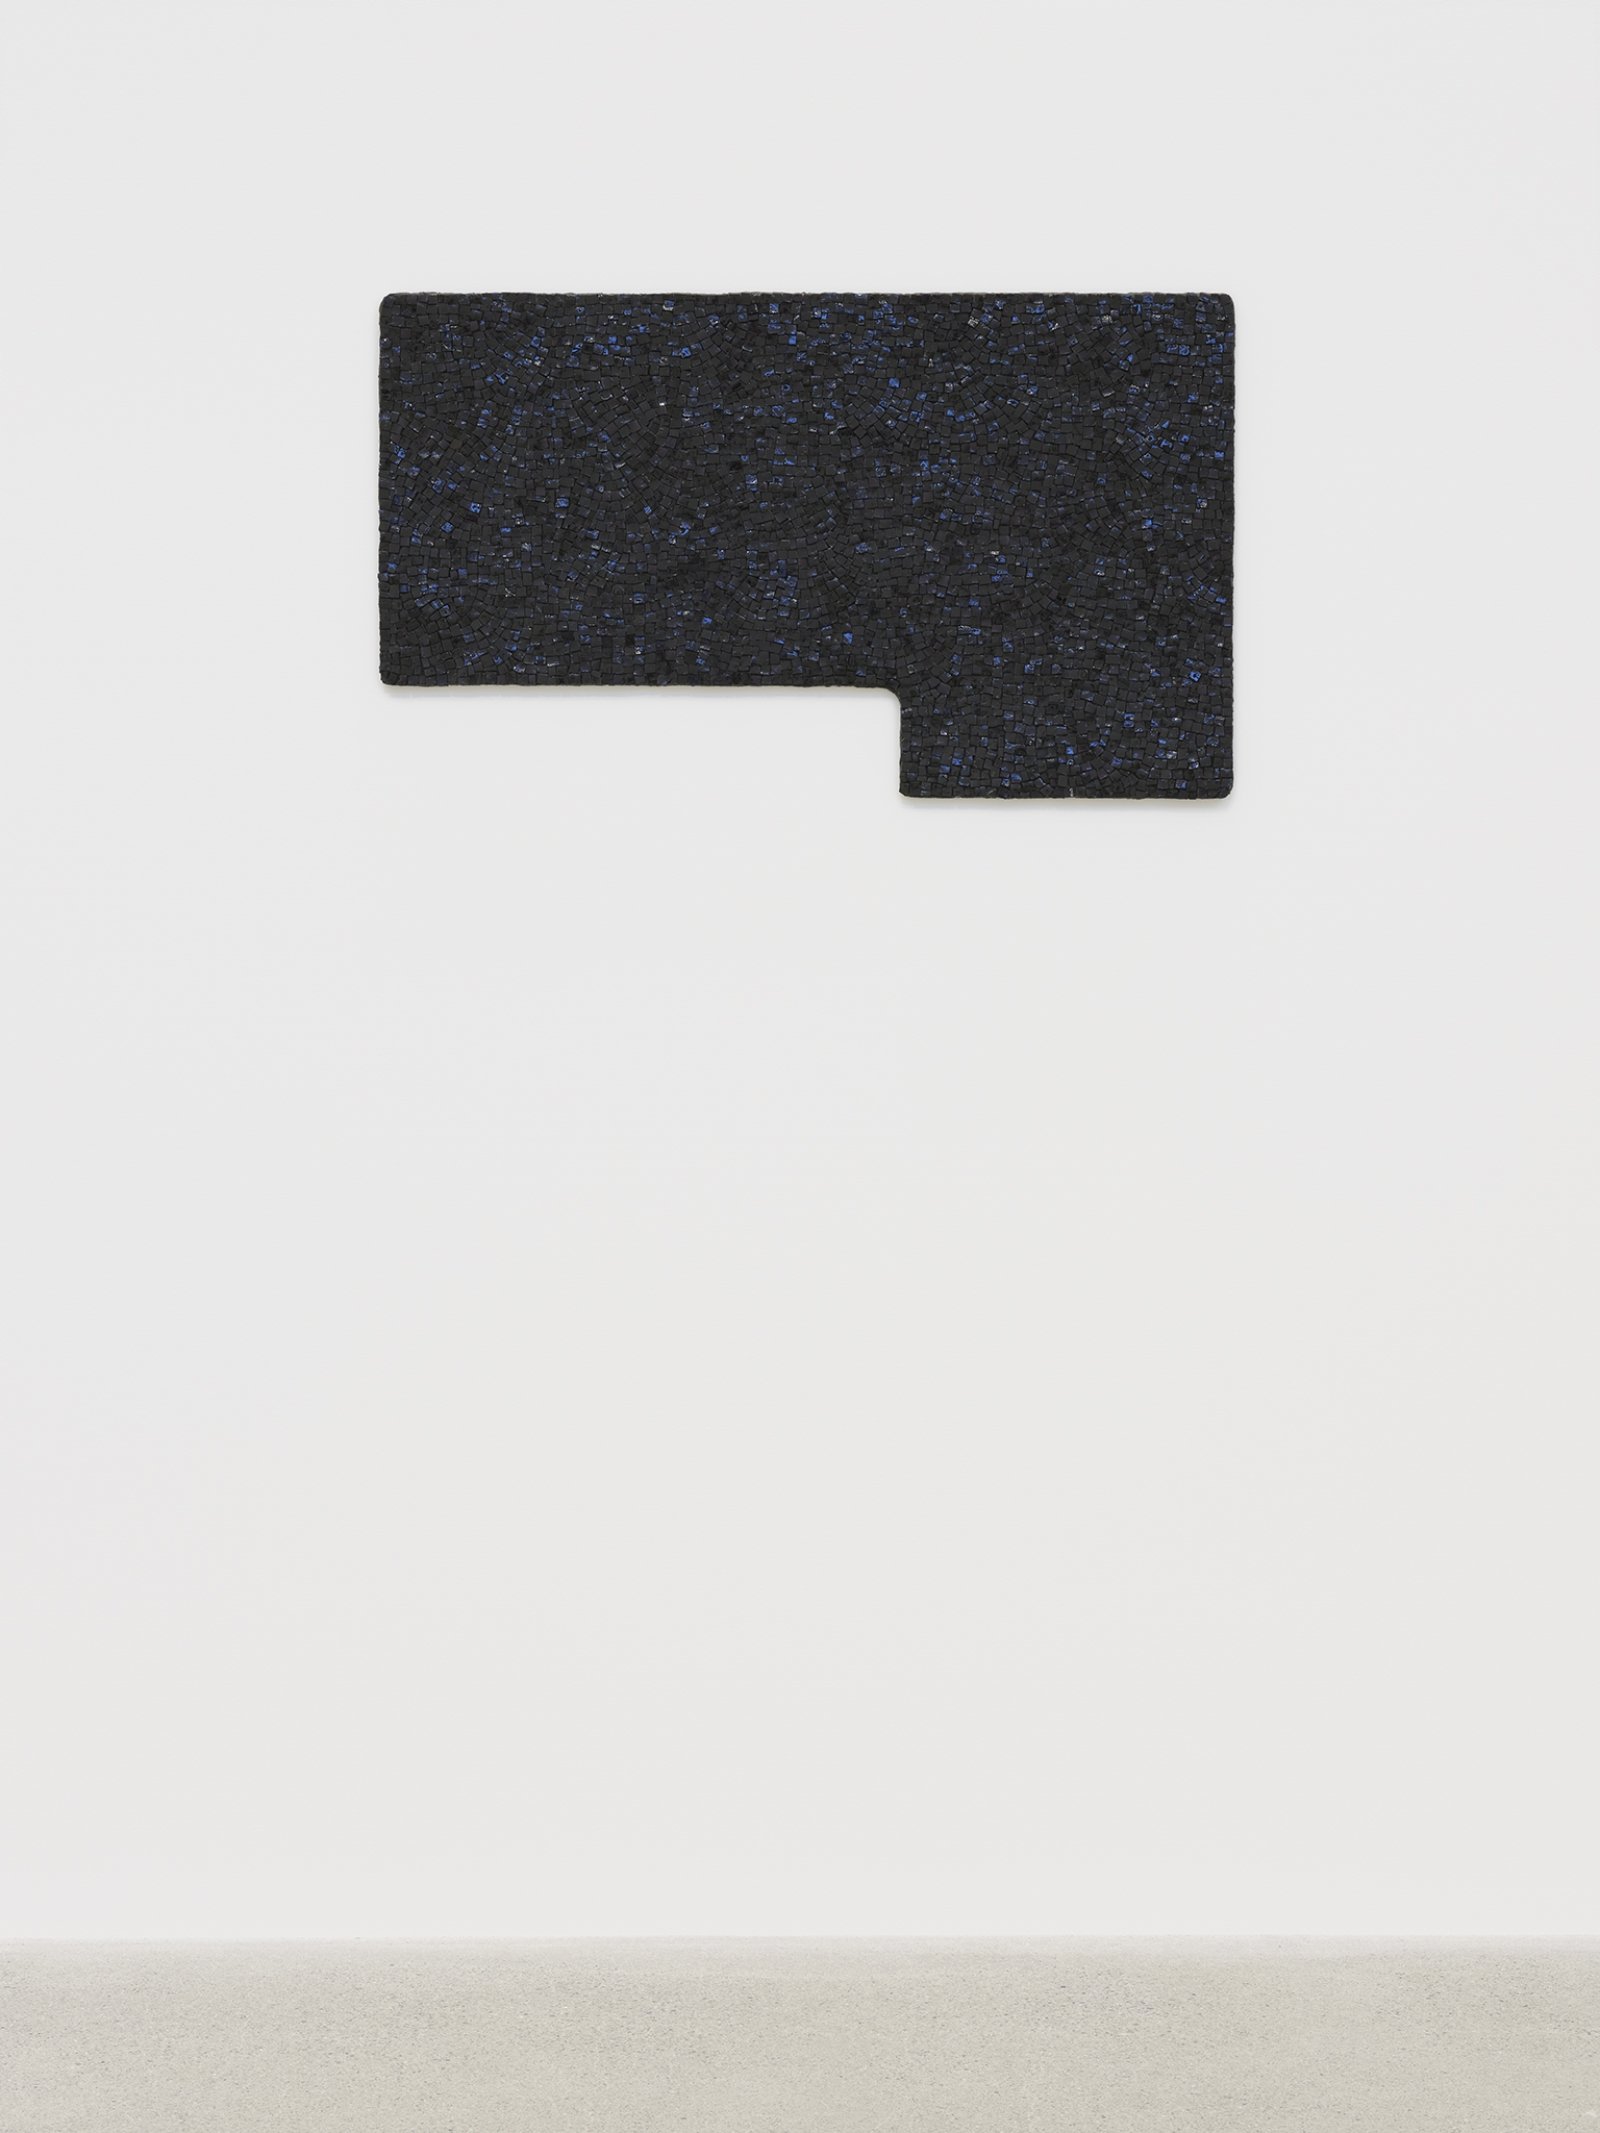 Janice Kerbel, Pool (Full L, black), 2019, glass smalti mosaic, 33 x 20 in. (83 x 50 cm)